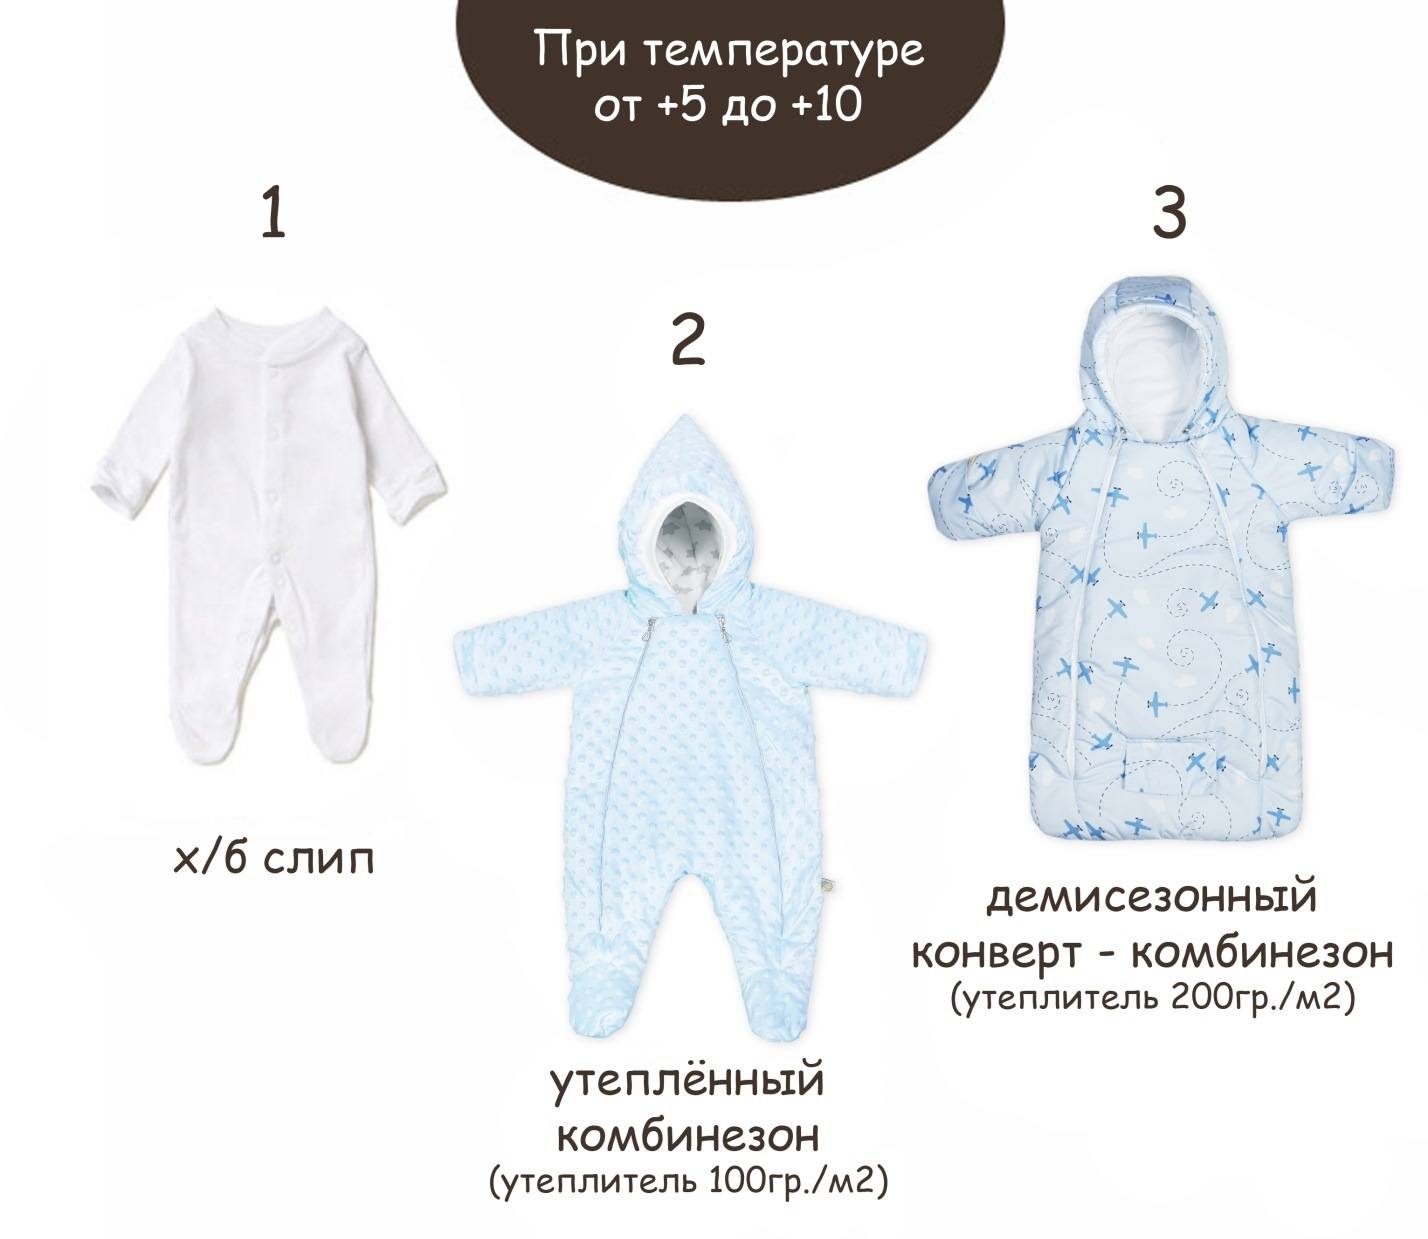 Как одевать новорожденного осенью и о выборе одежды